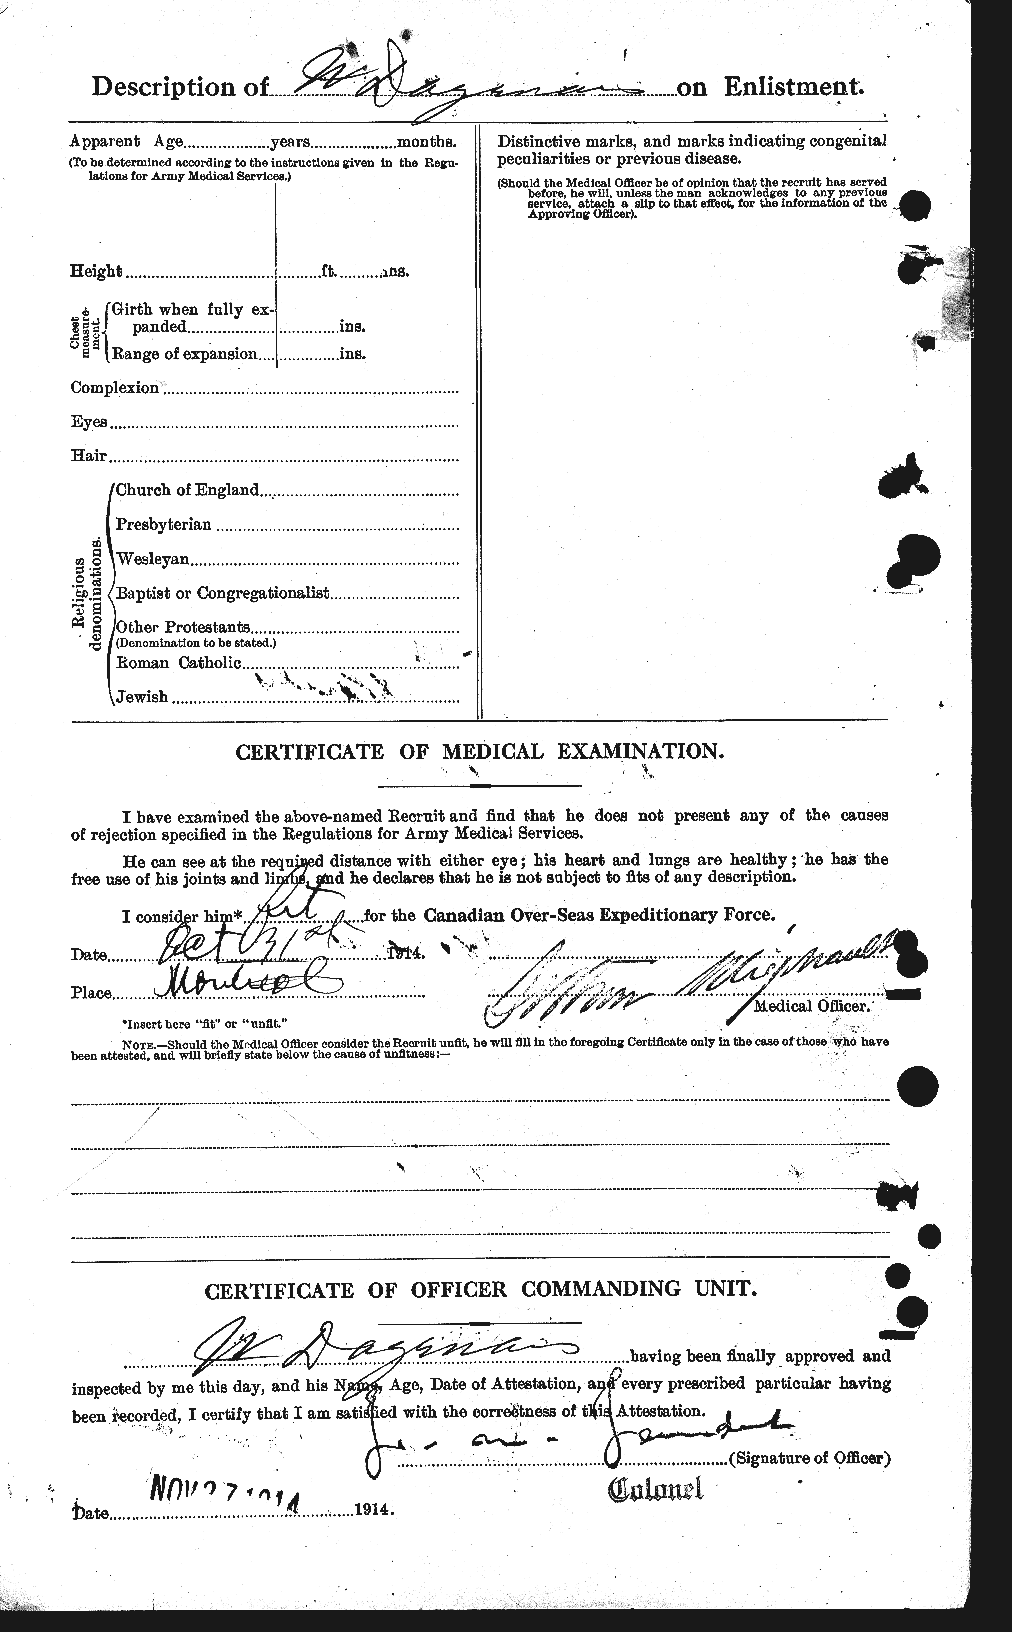 Dossiers du Personnel de la Première Guerre mondiale - CEC 276703b